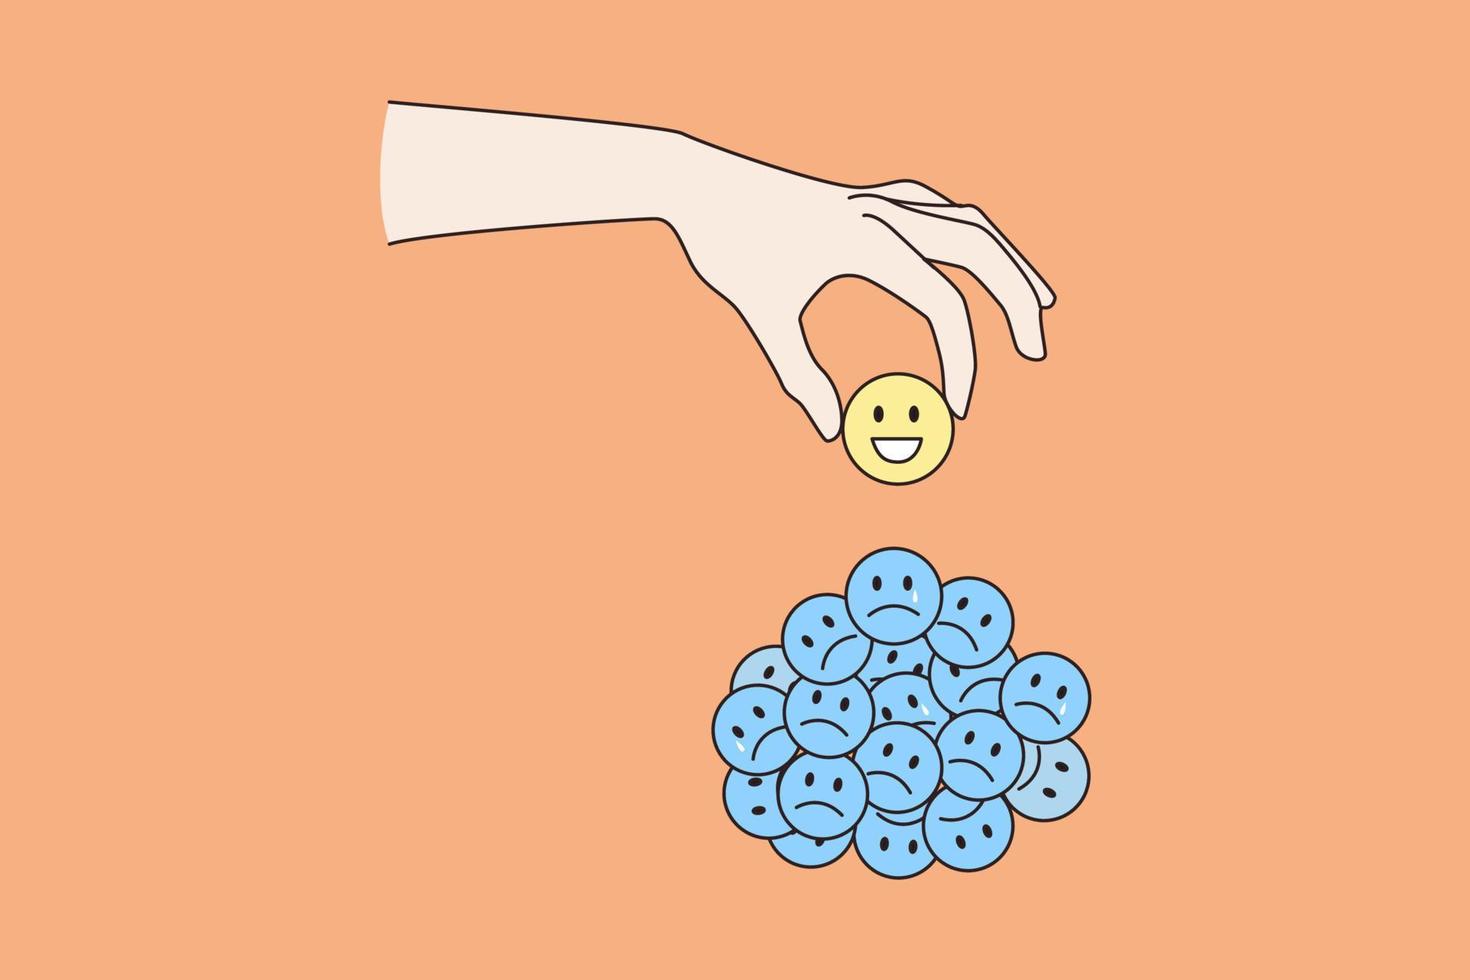 persoon hand- nemen Kiezen glimlachen emoticon van stapel van verdrietig ongelukkig emoji's. vrouw Mens besluiten worden gelukkig dolblij. mentaal Gezondheid, mooi zo leven evenwicht, emotioneel stabiliteit concept. vlak vector illustratie.